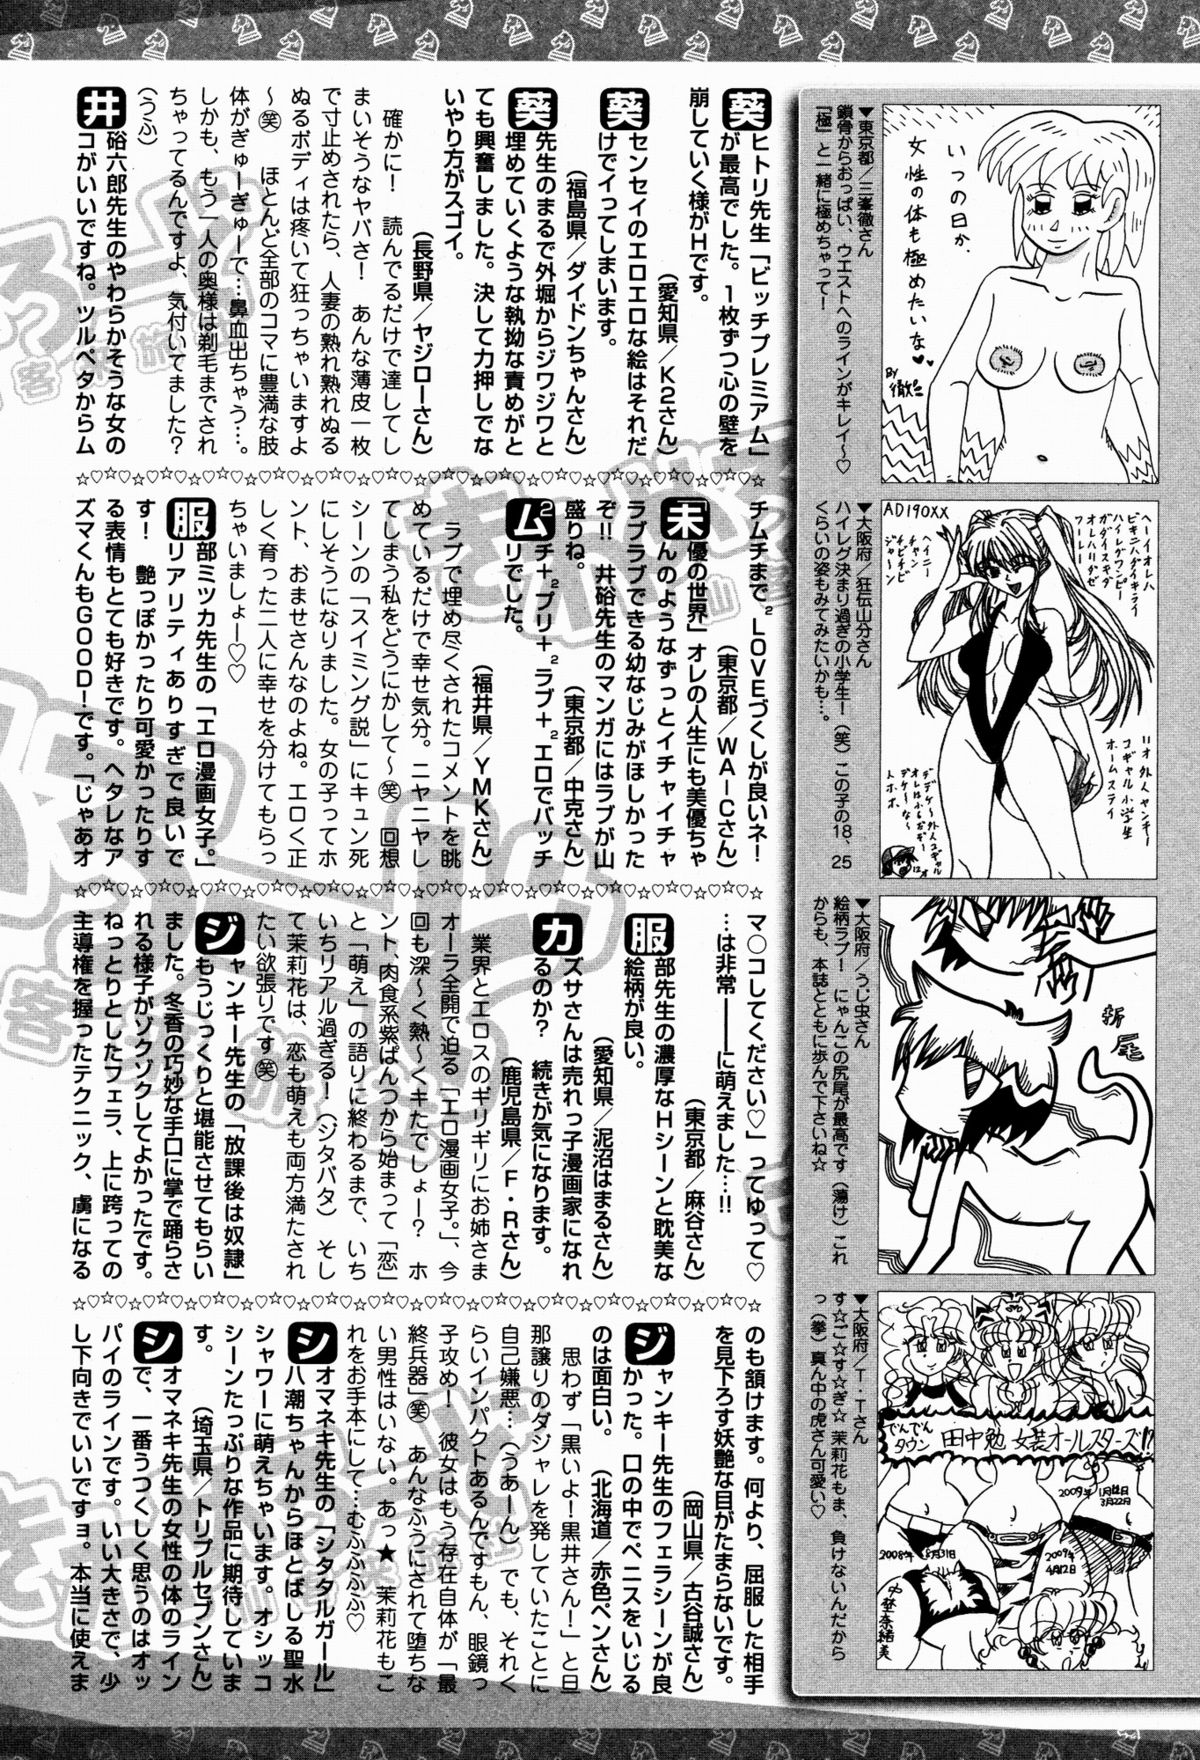 美少女革命 極 2009年8月号 Vol.3